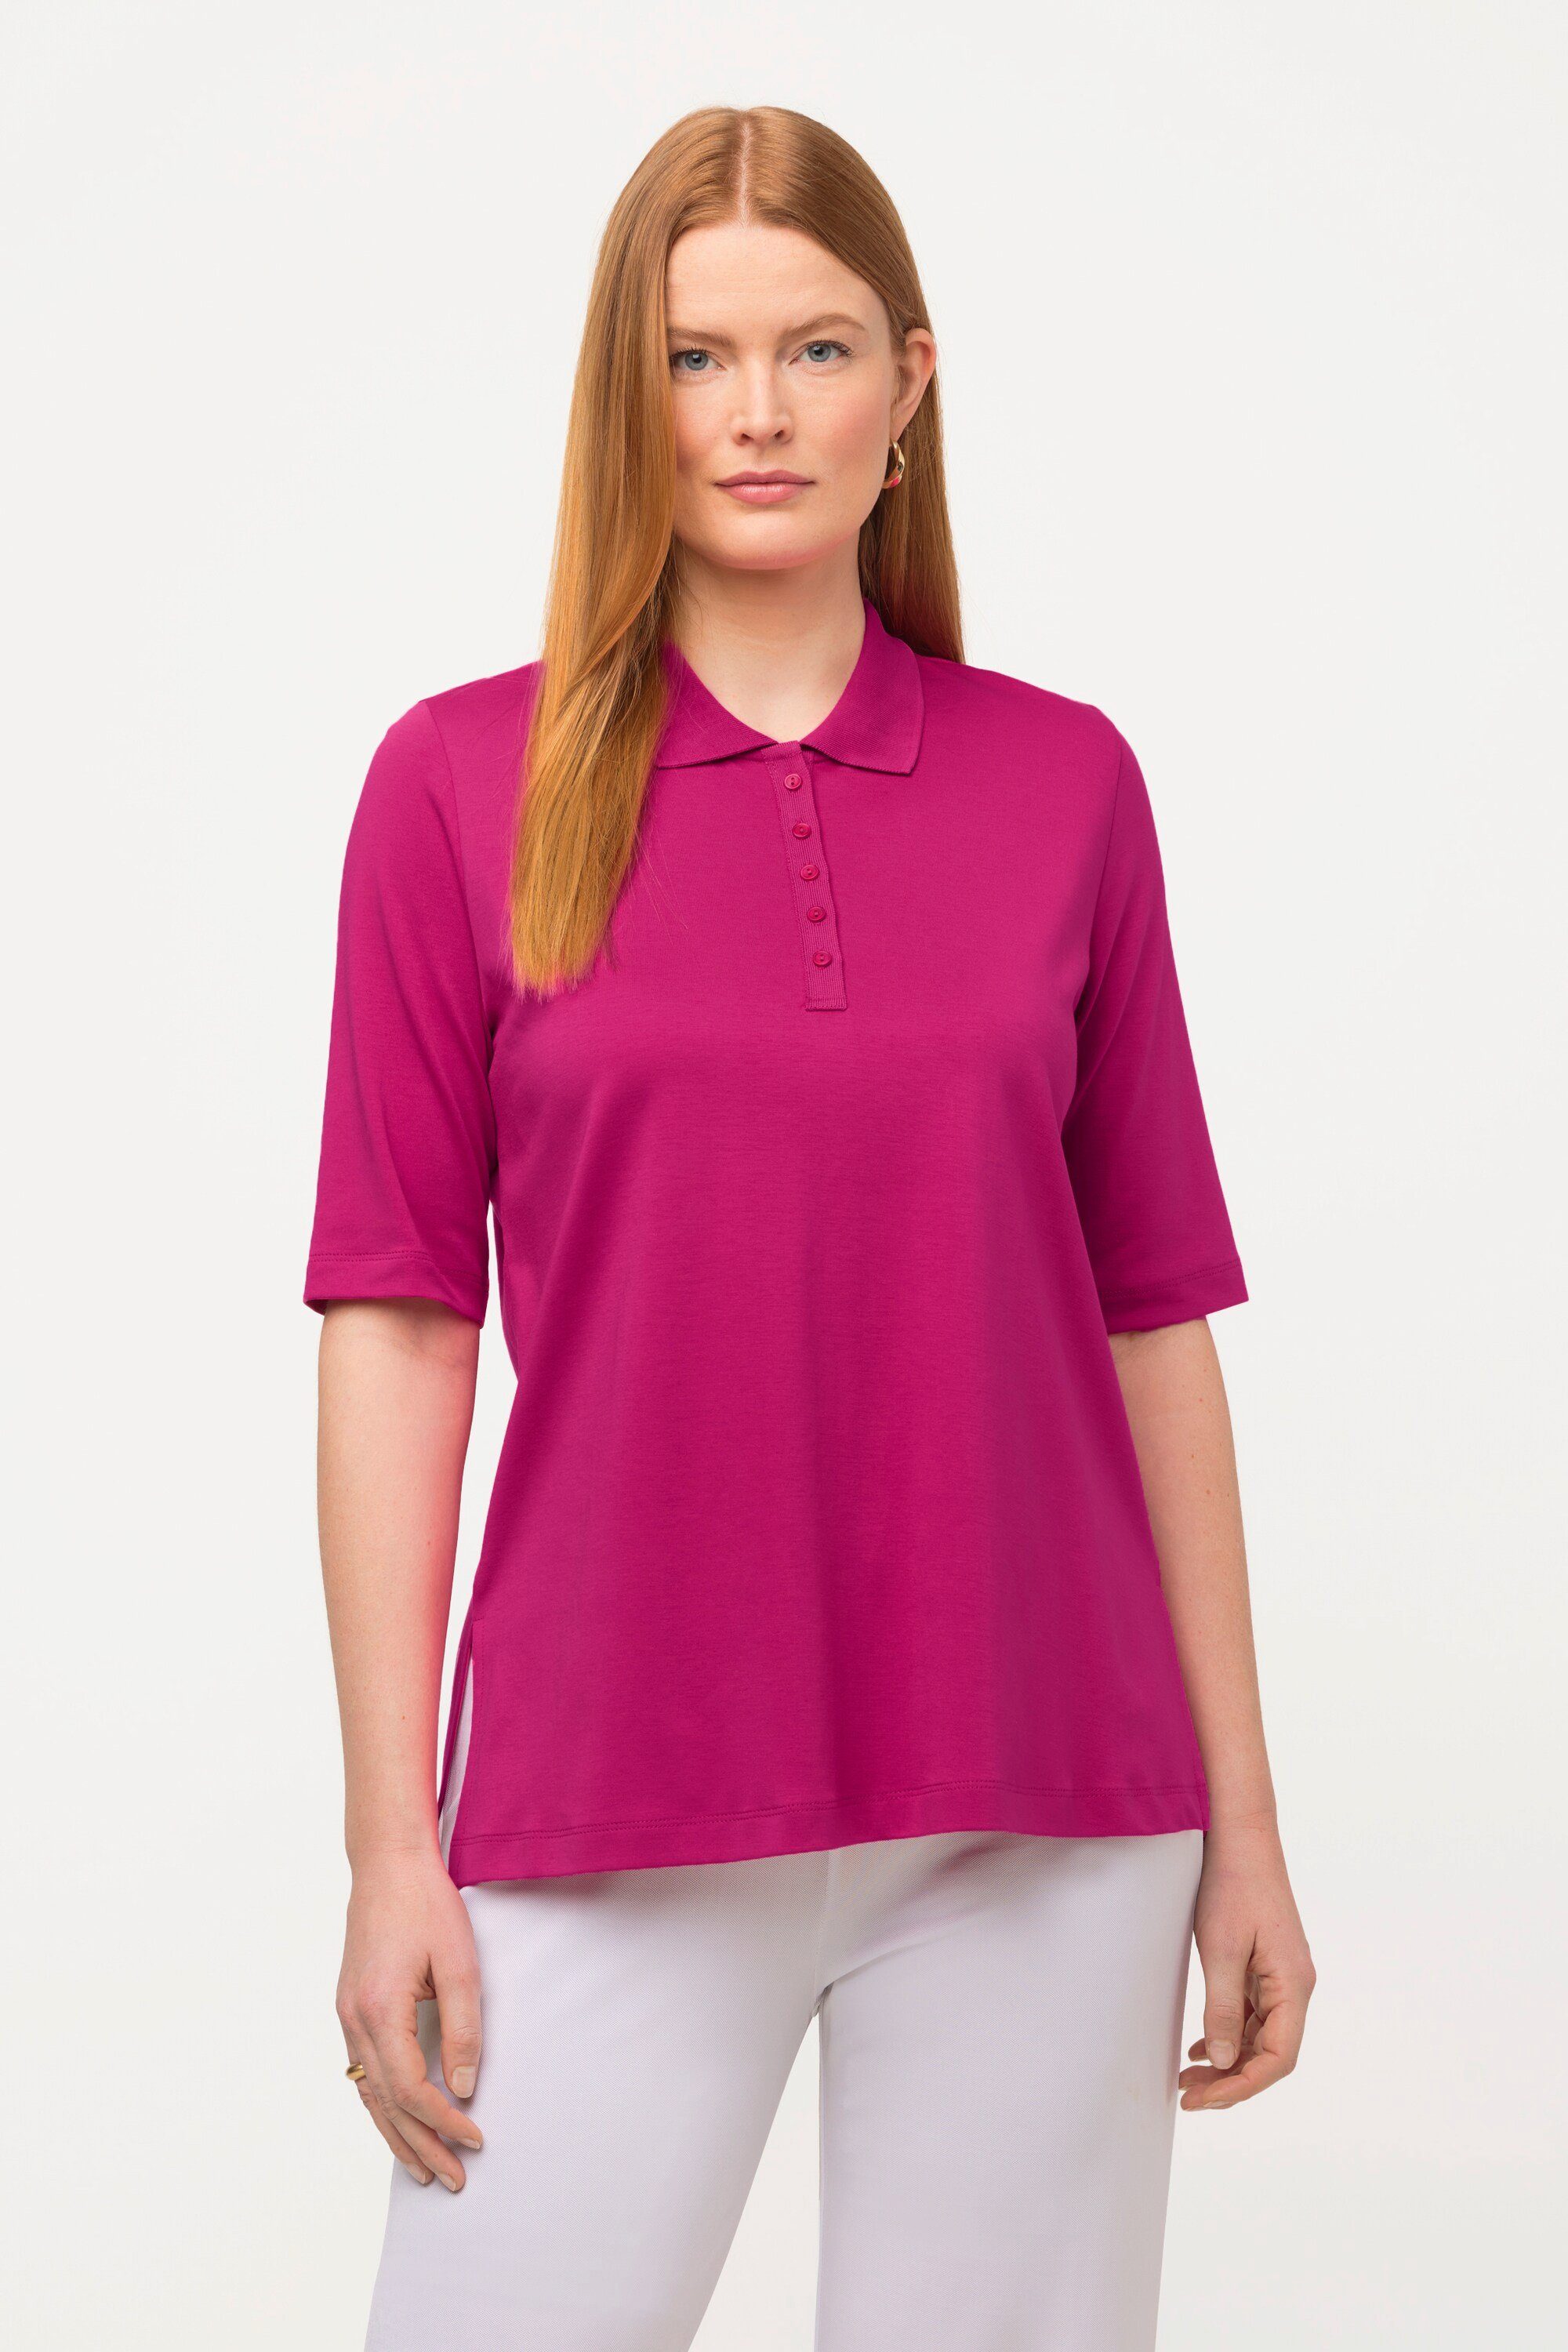 Damen Halbarm Poloshirts online OTTO | kaufen